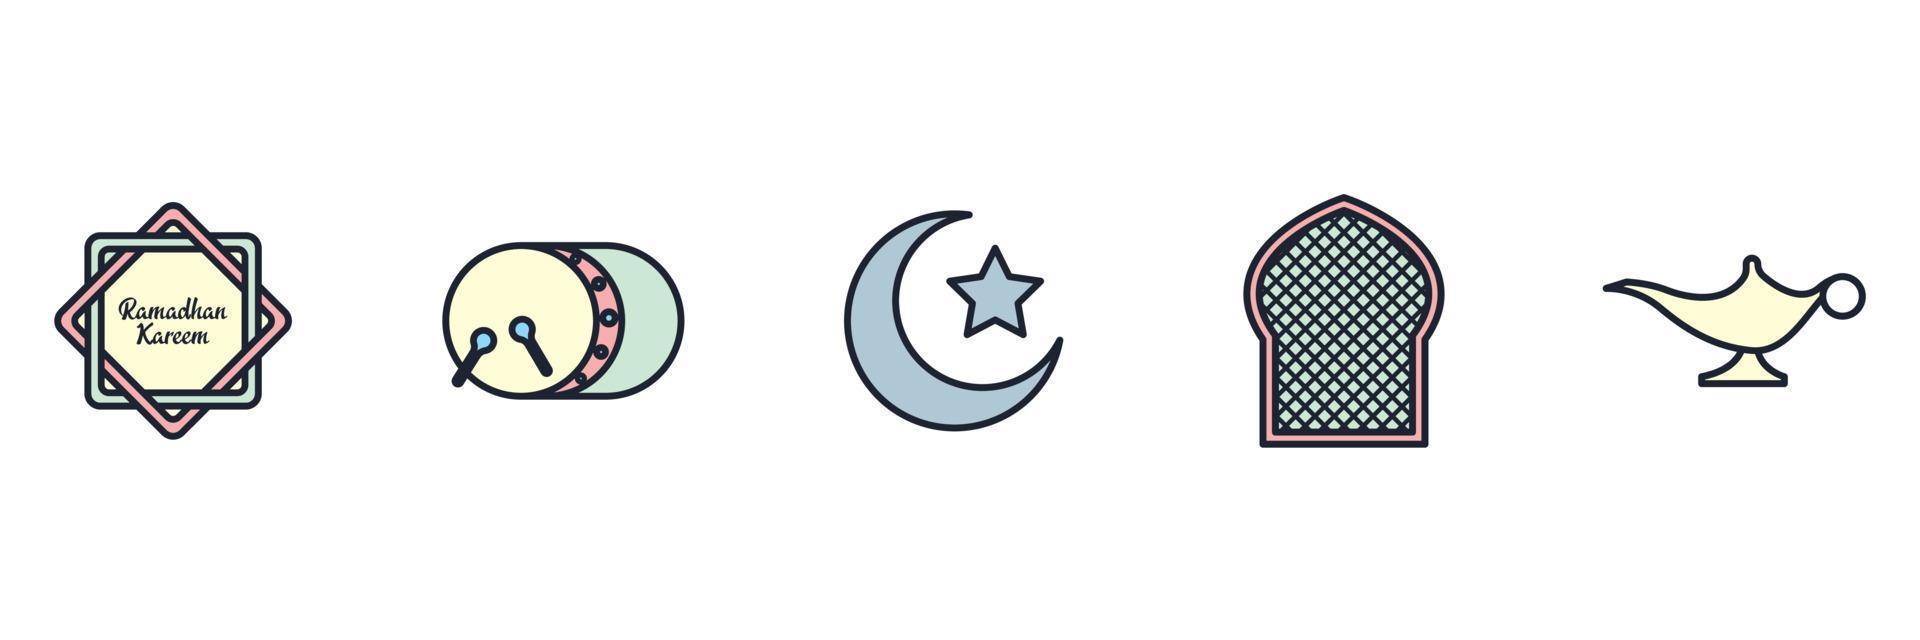 islámico popular. conjunto de elementos de ramadan kareem plantilla de símbolo de icono para ilustración de vector de logotipo de colección de diseño gráfico y web